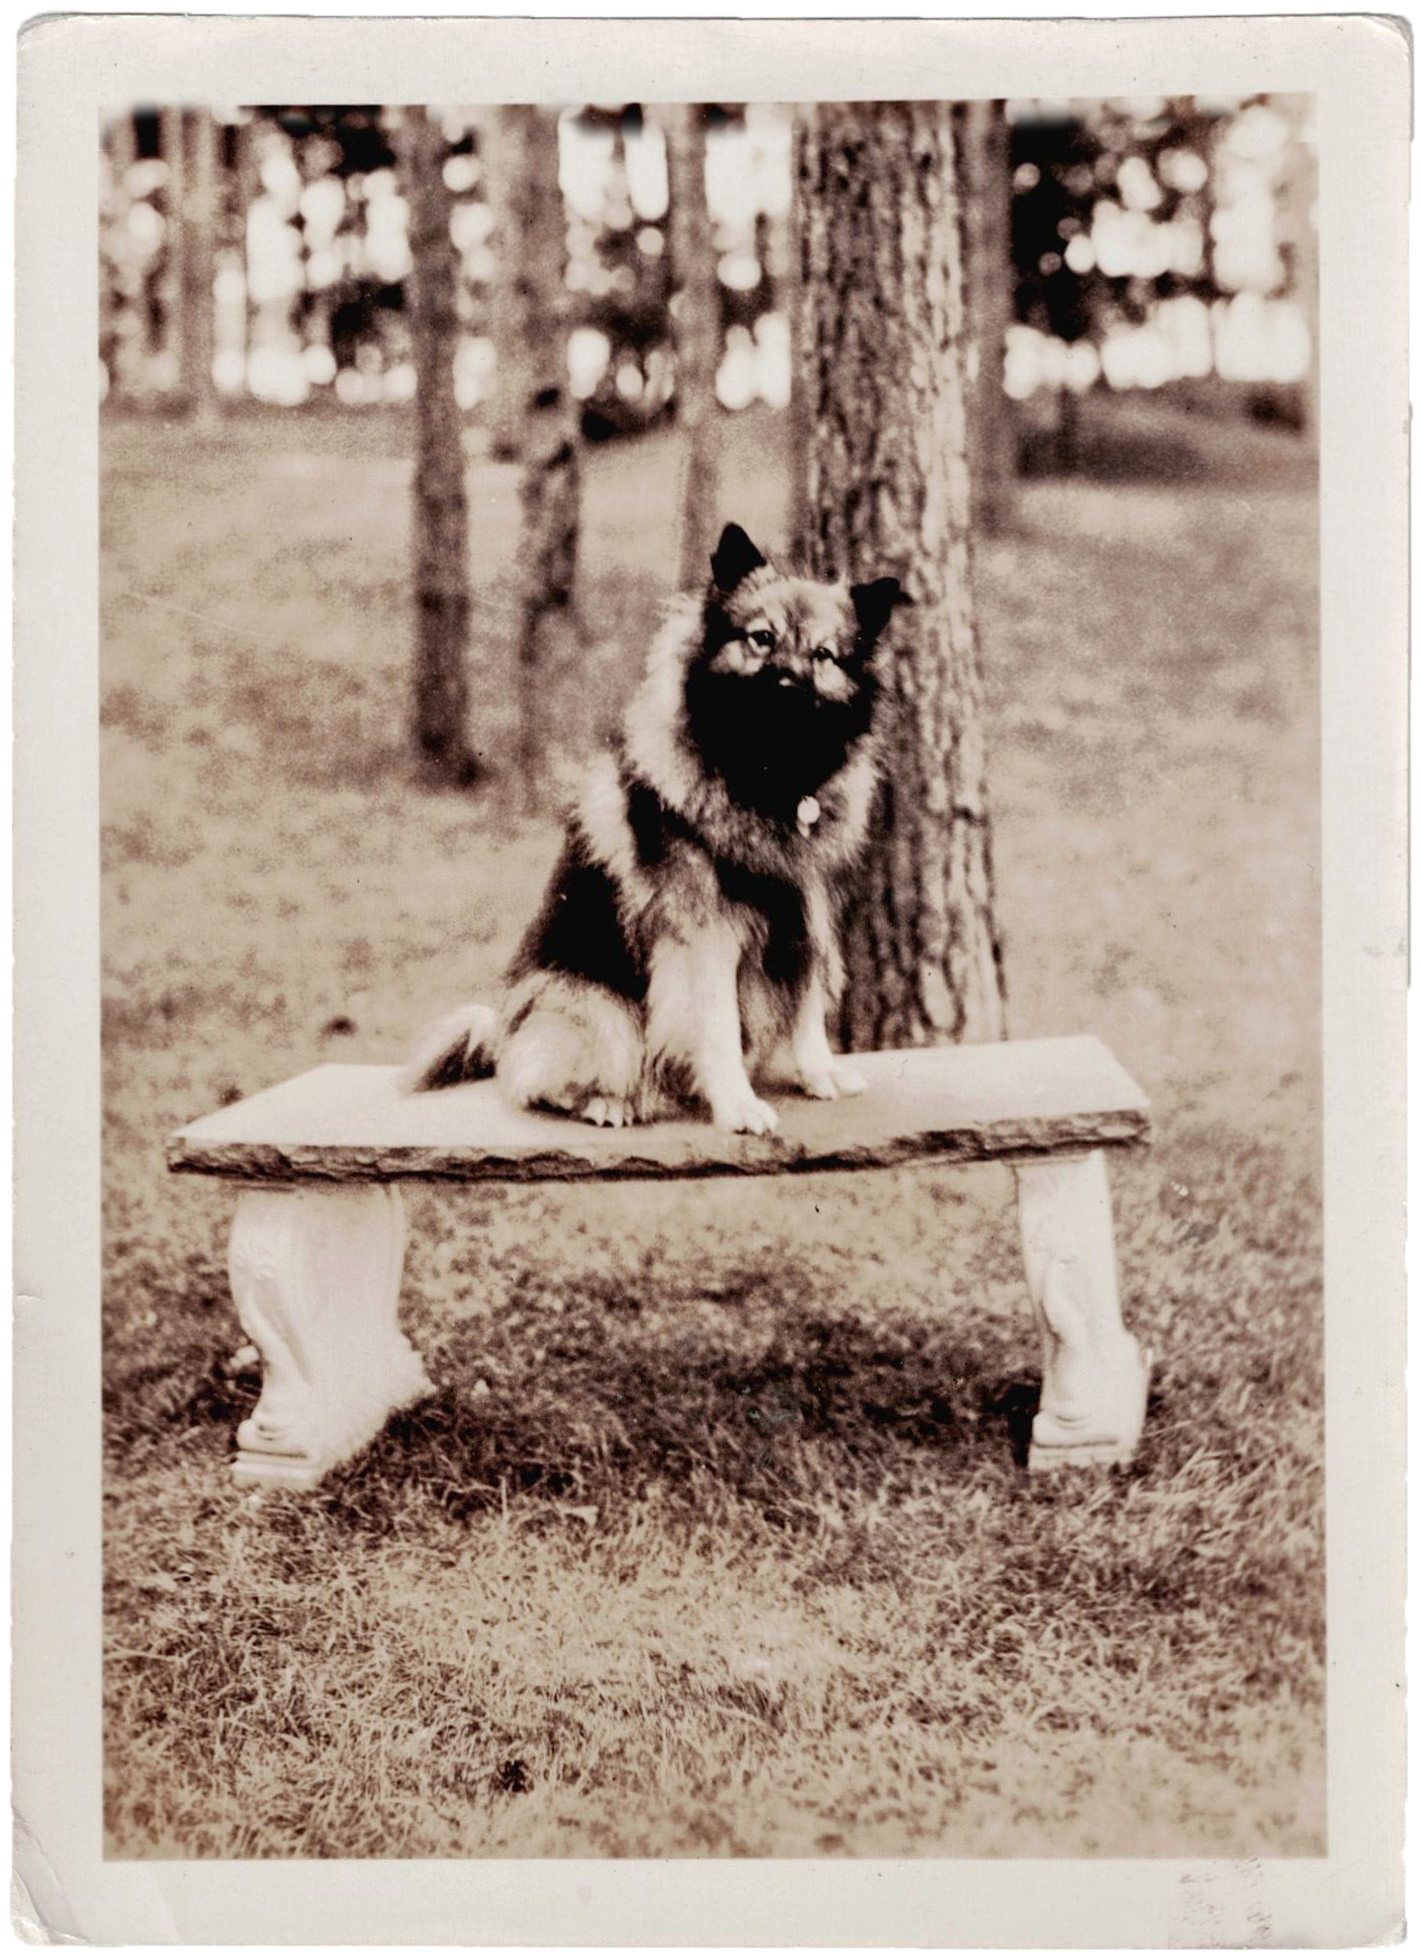 images/Historische-Bilder/Wolfsspitz-Keeshond-1940-USA.png#joomlaImage://local-images/Historische-Bilder/Wolfsspitz-Keeshond-1940-USA.png?width=1421&height=1960